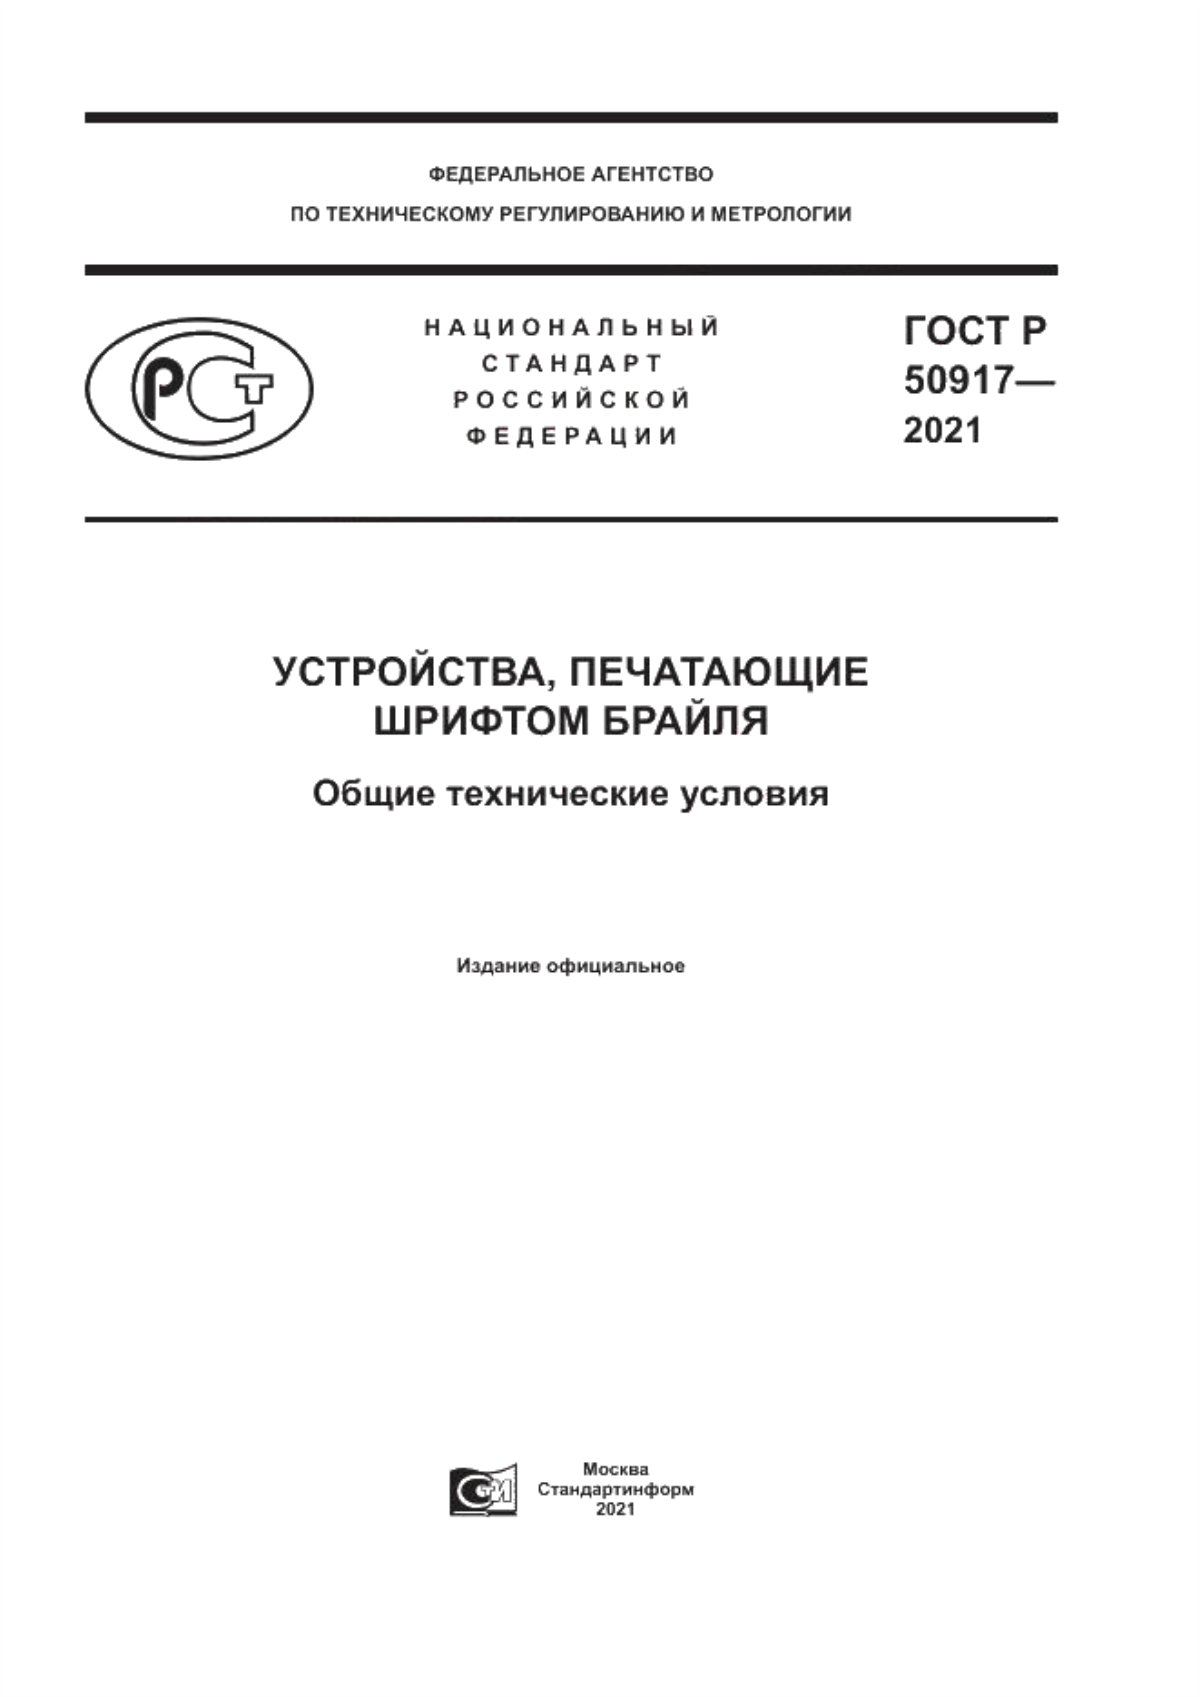 ГОСТ Р 50917-2021 Устройства, печатающие шрифтом Брайля. Общие технические условия